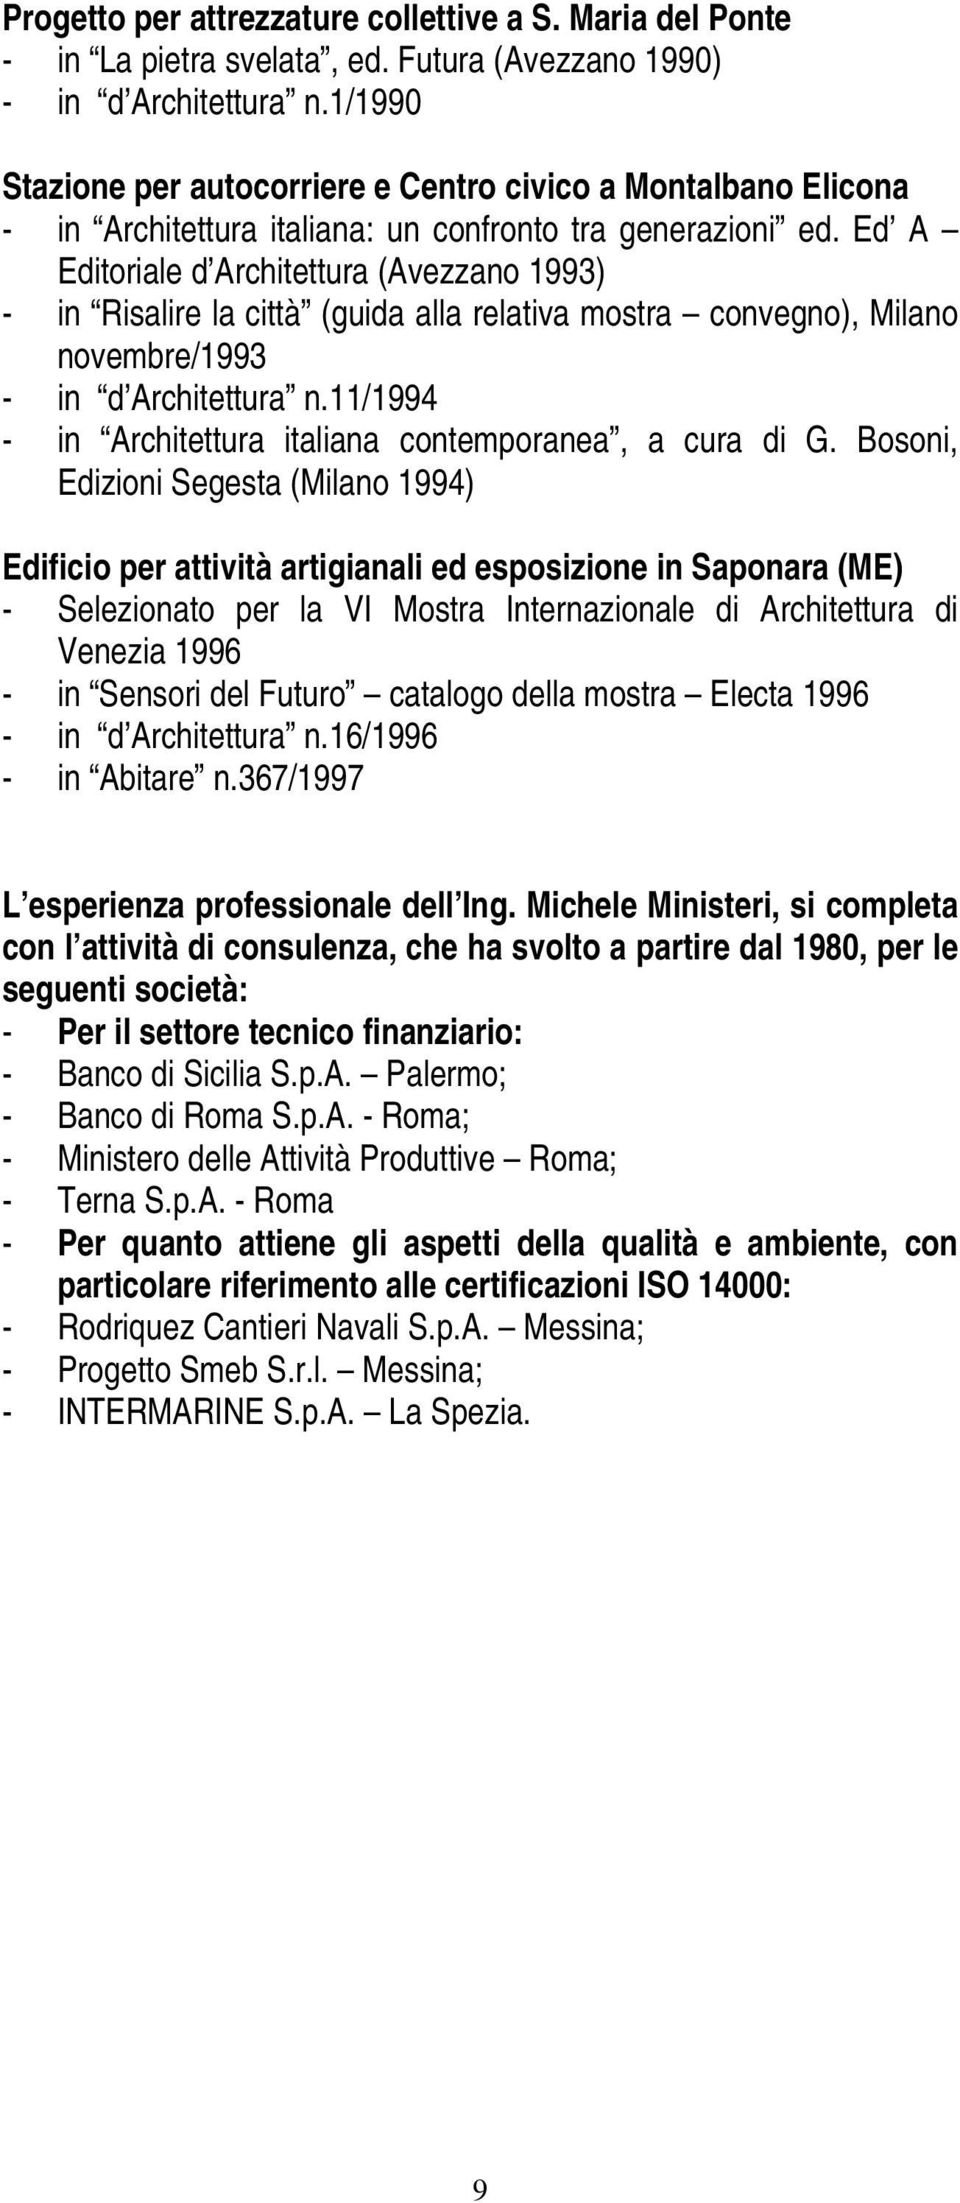 Ed A Editoriale d Architettura (Avezzano 1993) - in Risalire la città (guida alla relativa mostra convegno), Milano novembre/1993 - in d Architettura n.